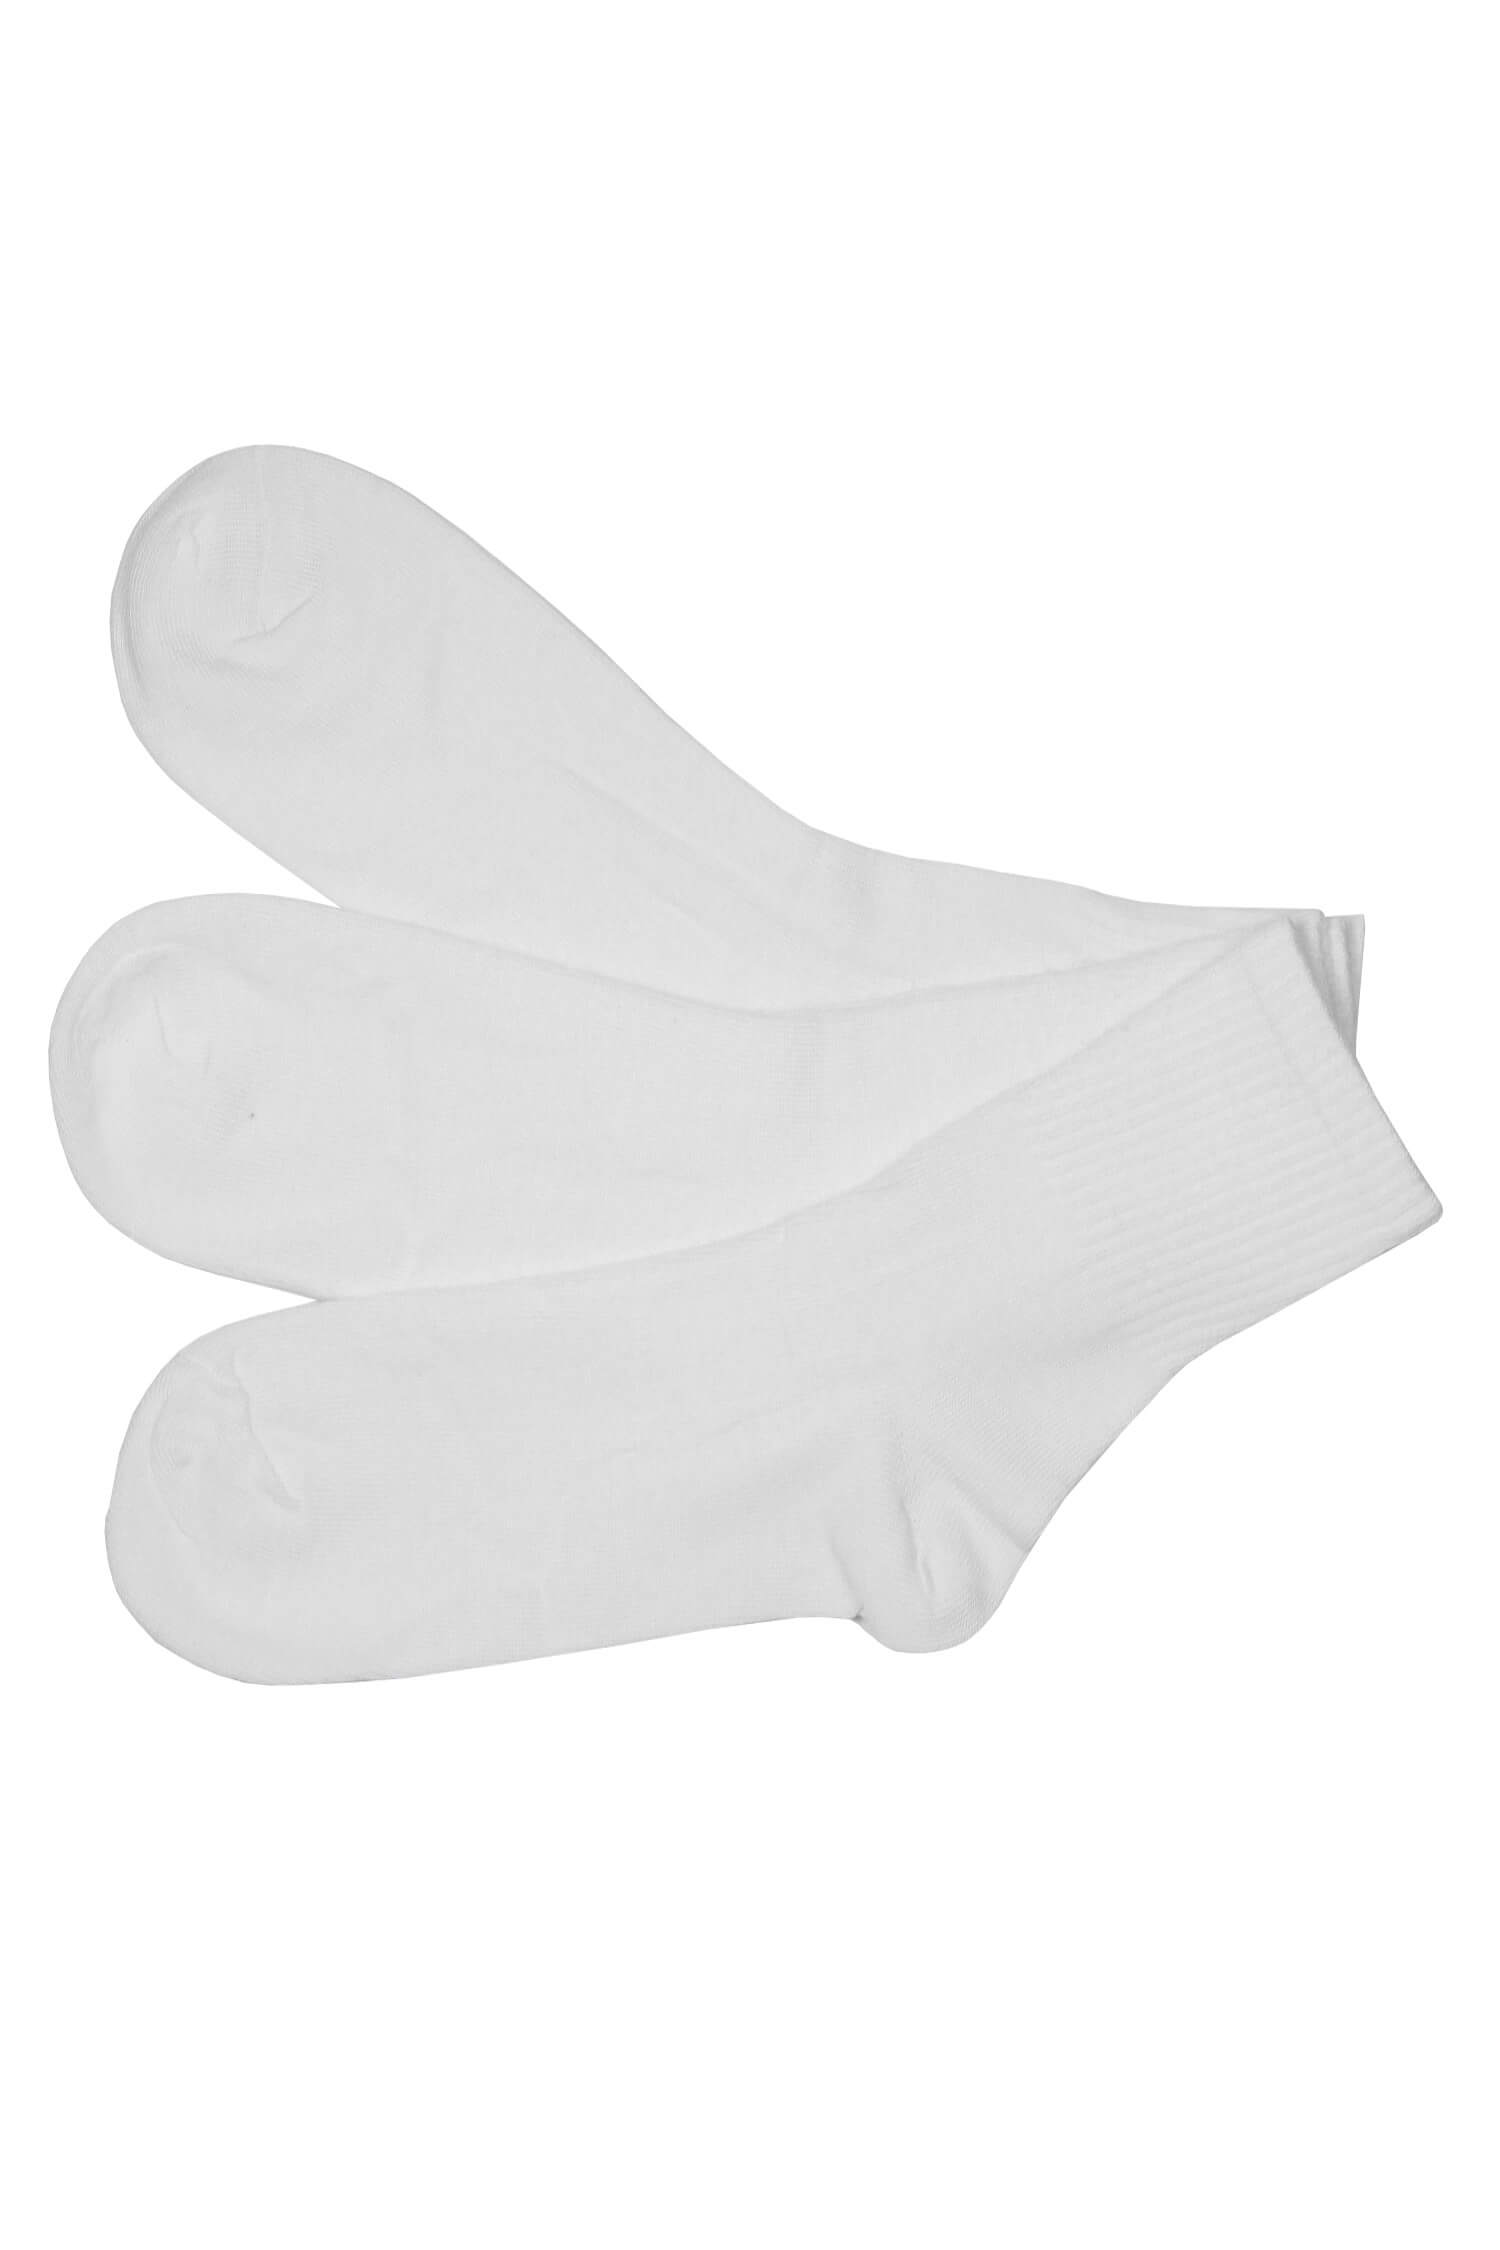 Sportovní bavlněné dámské ponožky ZW401A-3Pack 35-38 bílá